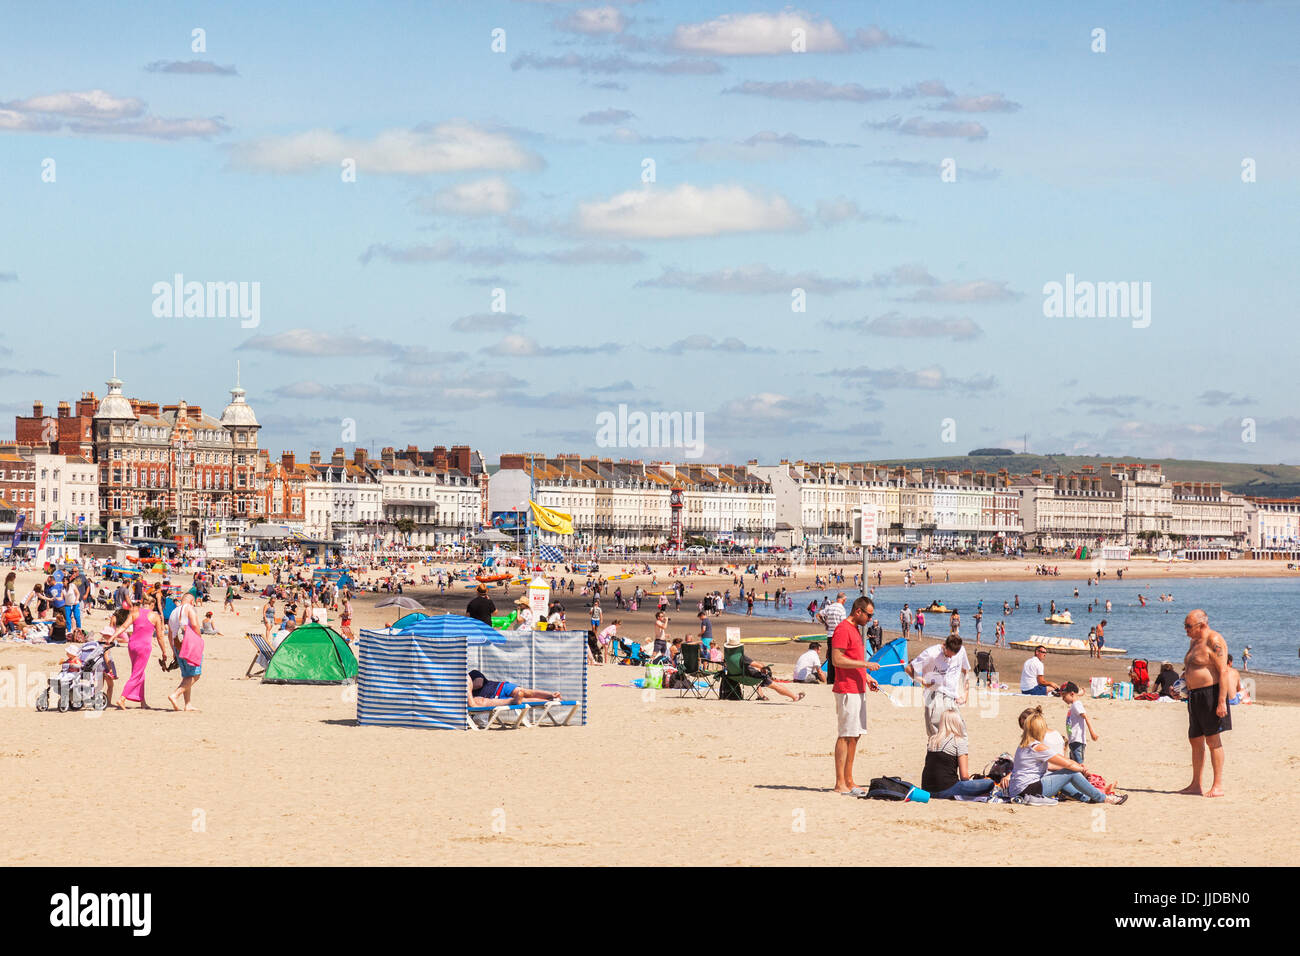 El 2 de julio de 2017: Weymouth, Dorset, Inglaterra, Reino Unido - gente tomando el sol en la concurrida playa en un caluroso día de verano. Foto de stock